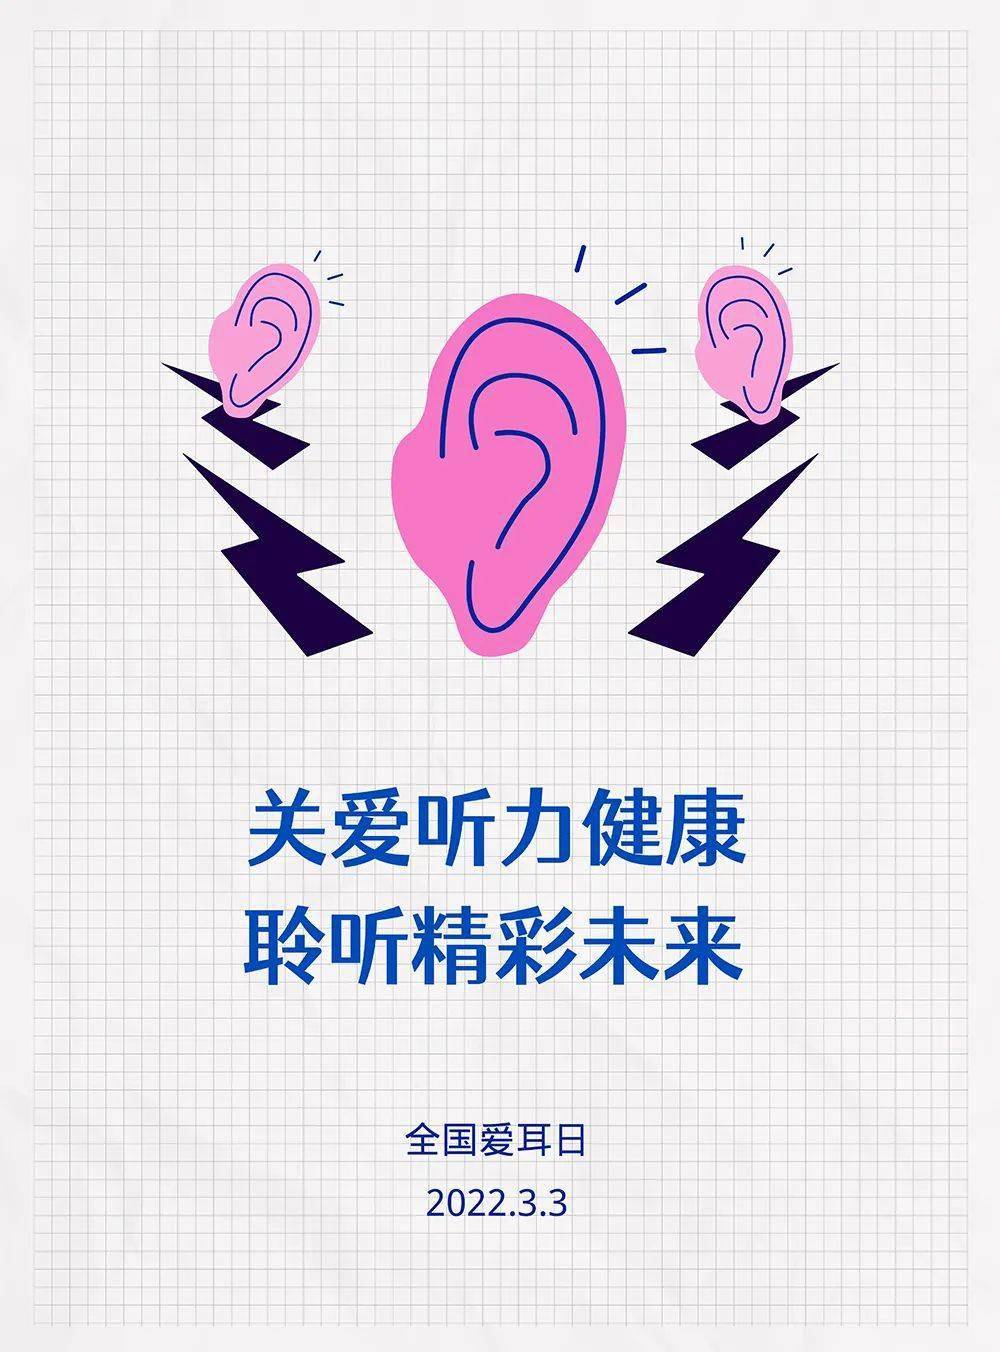 【2022年全国爱耳日】关爱听力健康,聆听精彩未来